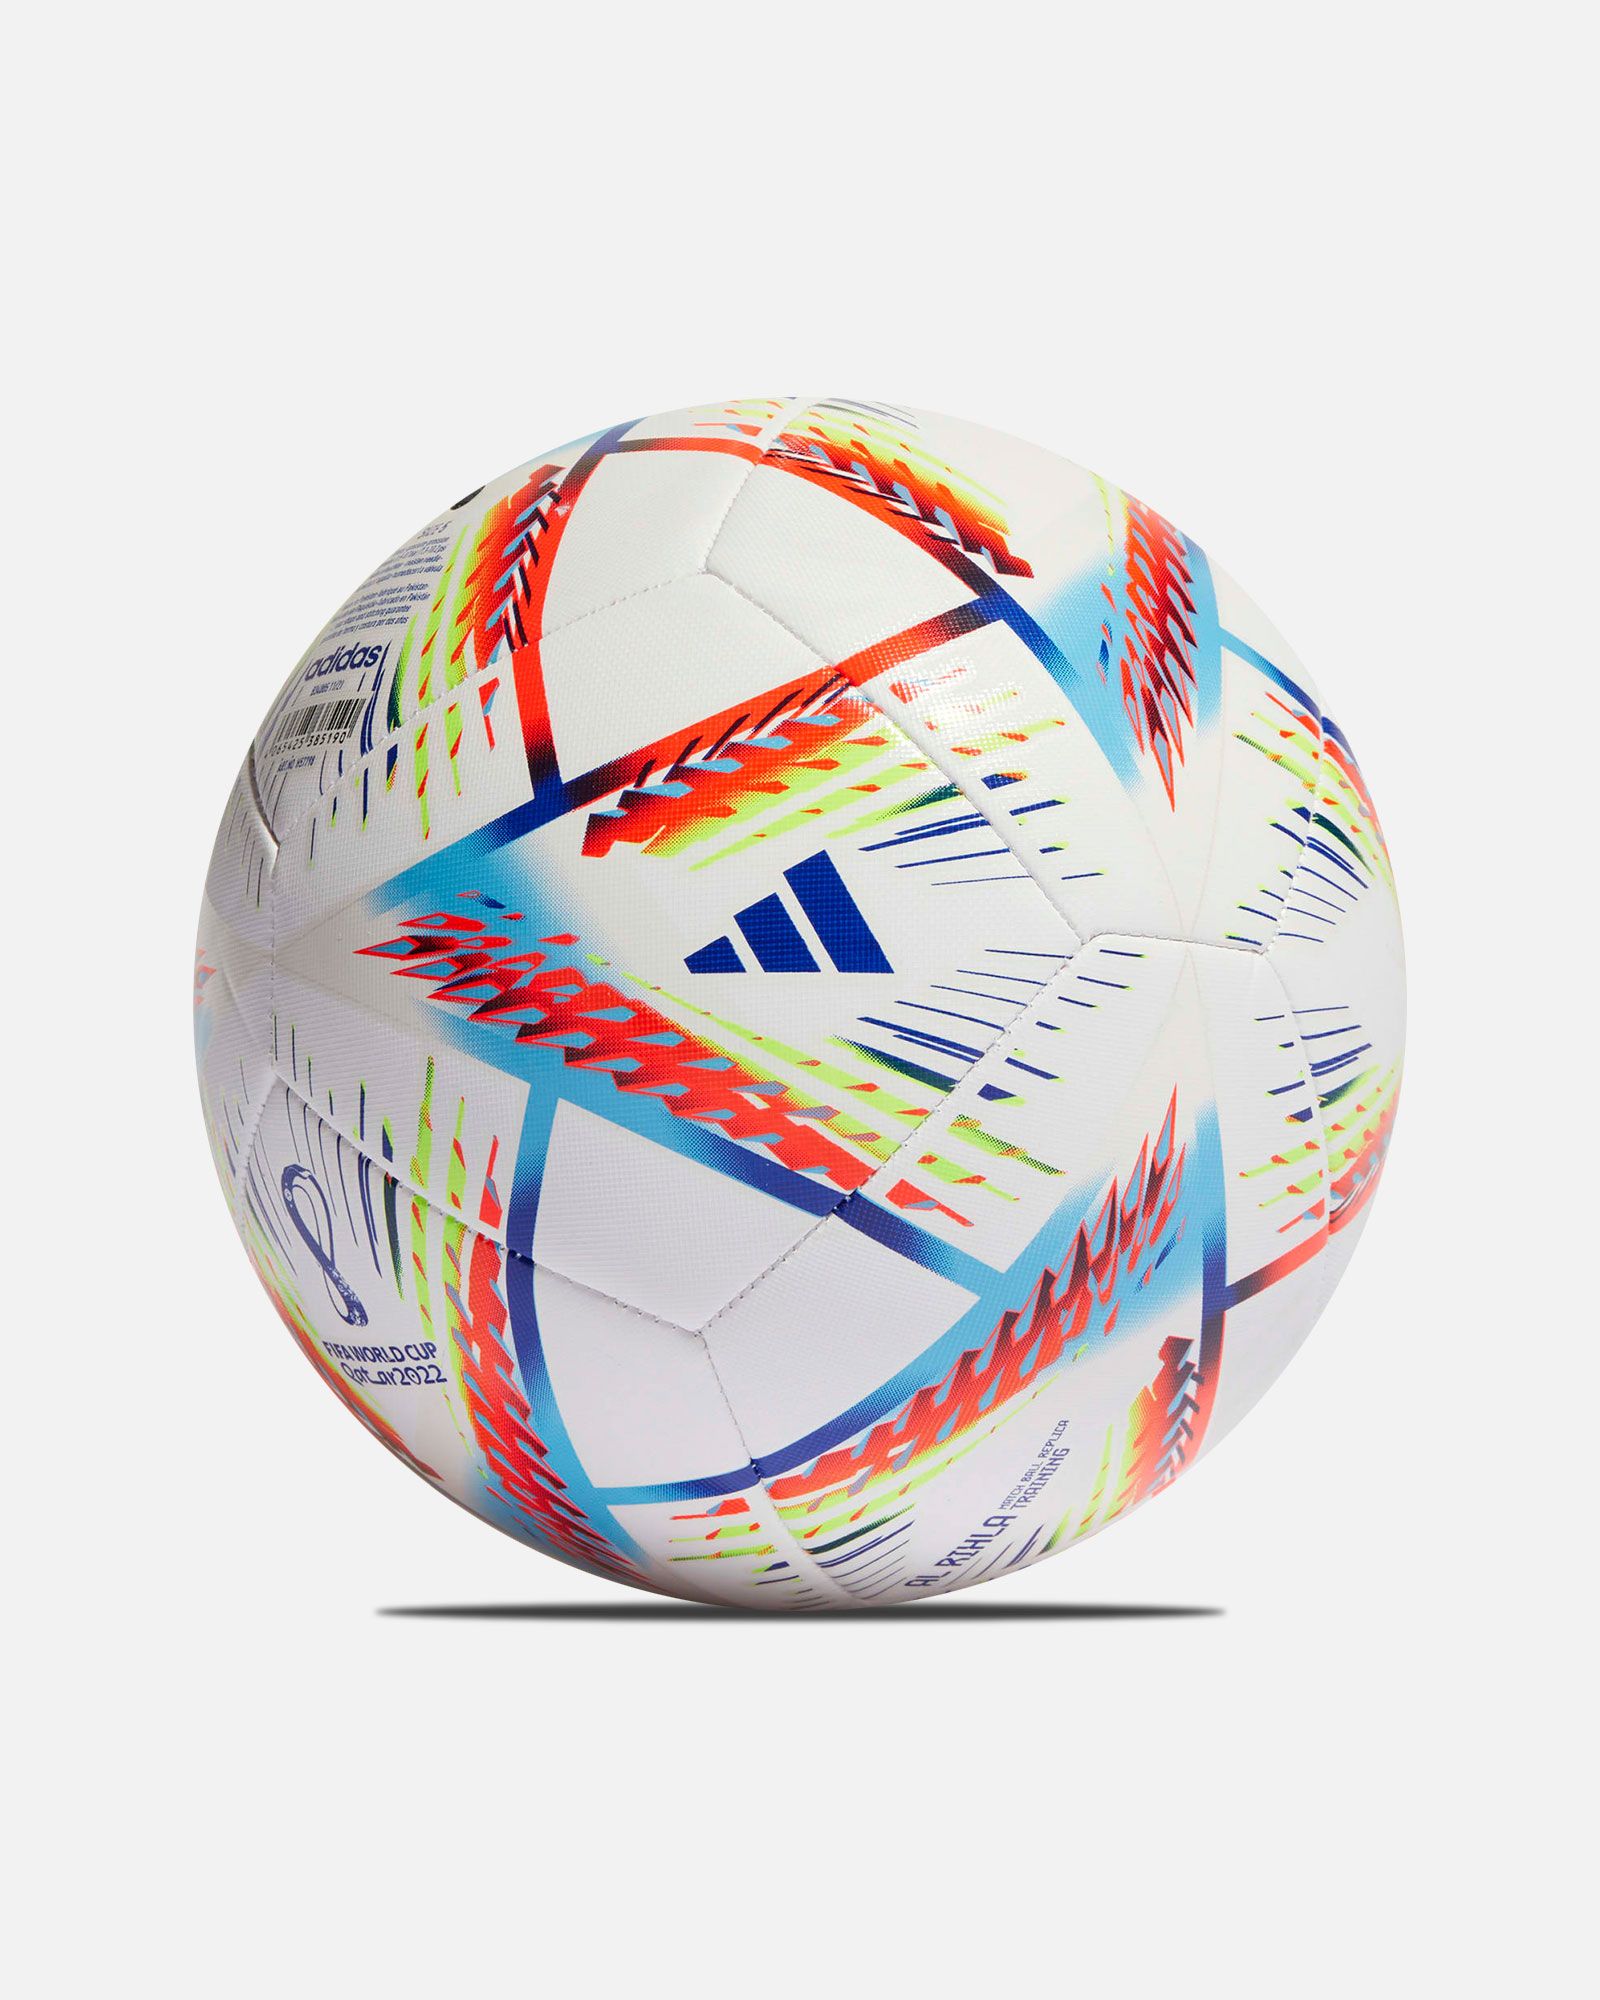 Balón adidas Al Rihla WC Qatar 2022 Training - Fútbol Factory